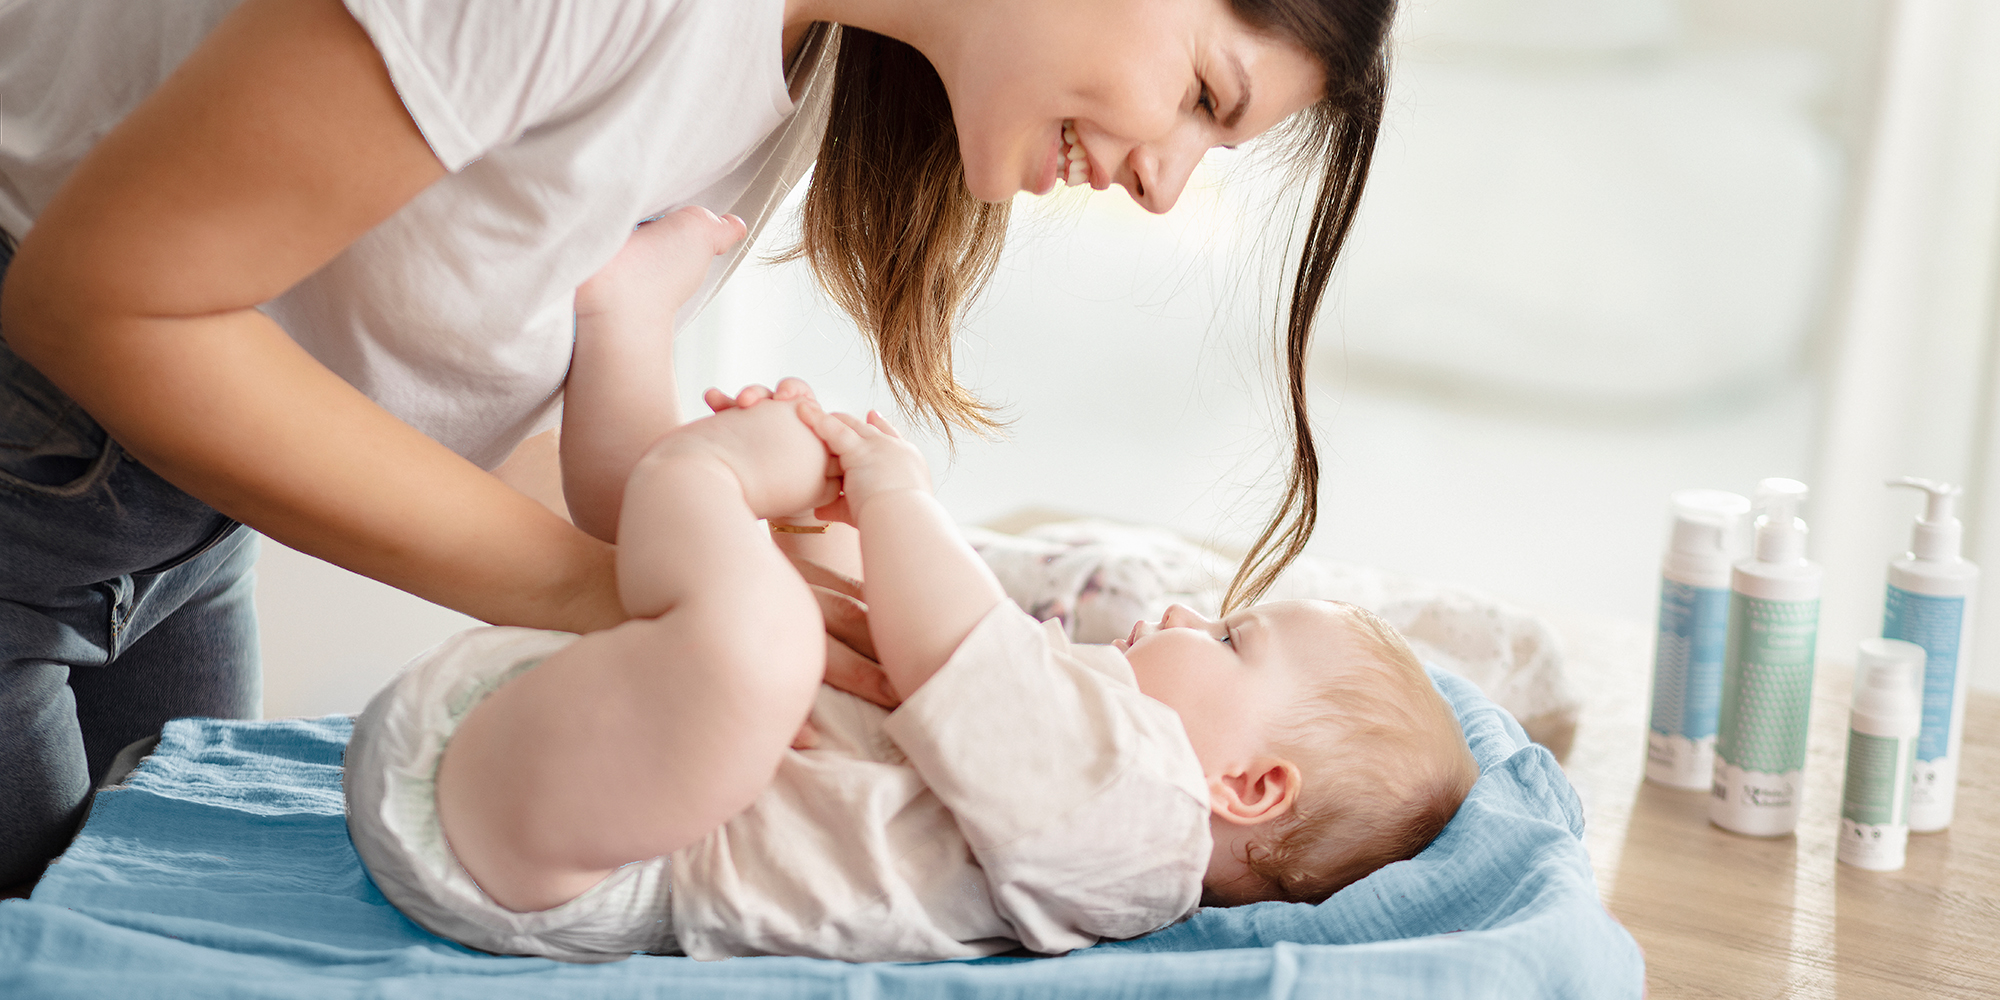 Édesanya pelenkát cserél a babán, a babaápolás lépésről lépésre kalauz javaslatai szerint